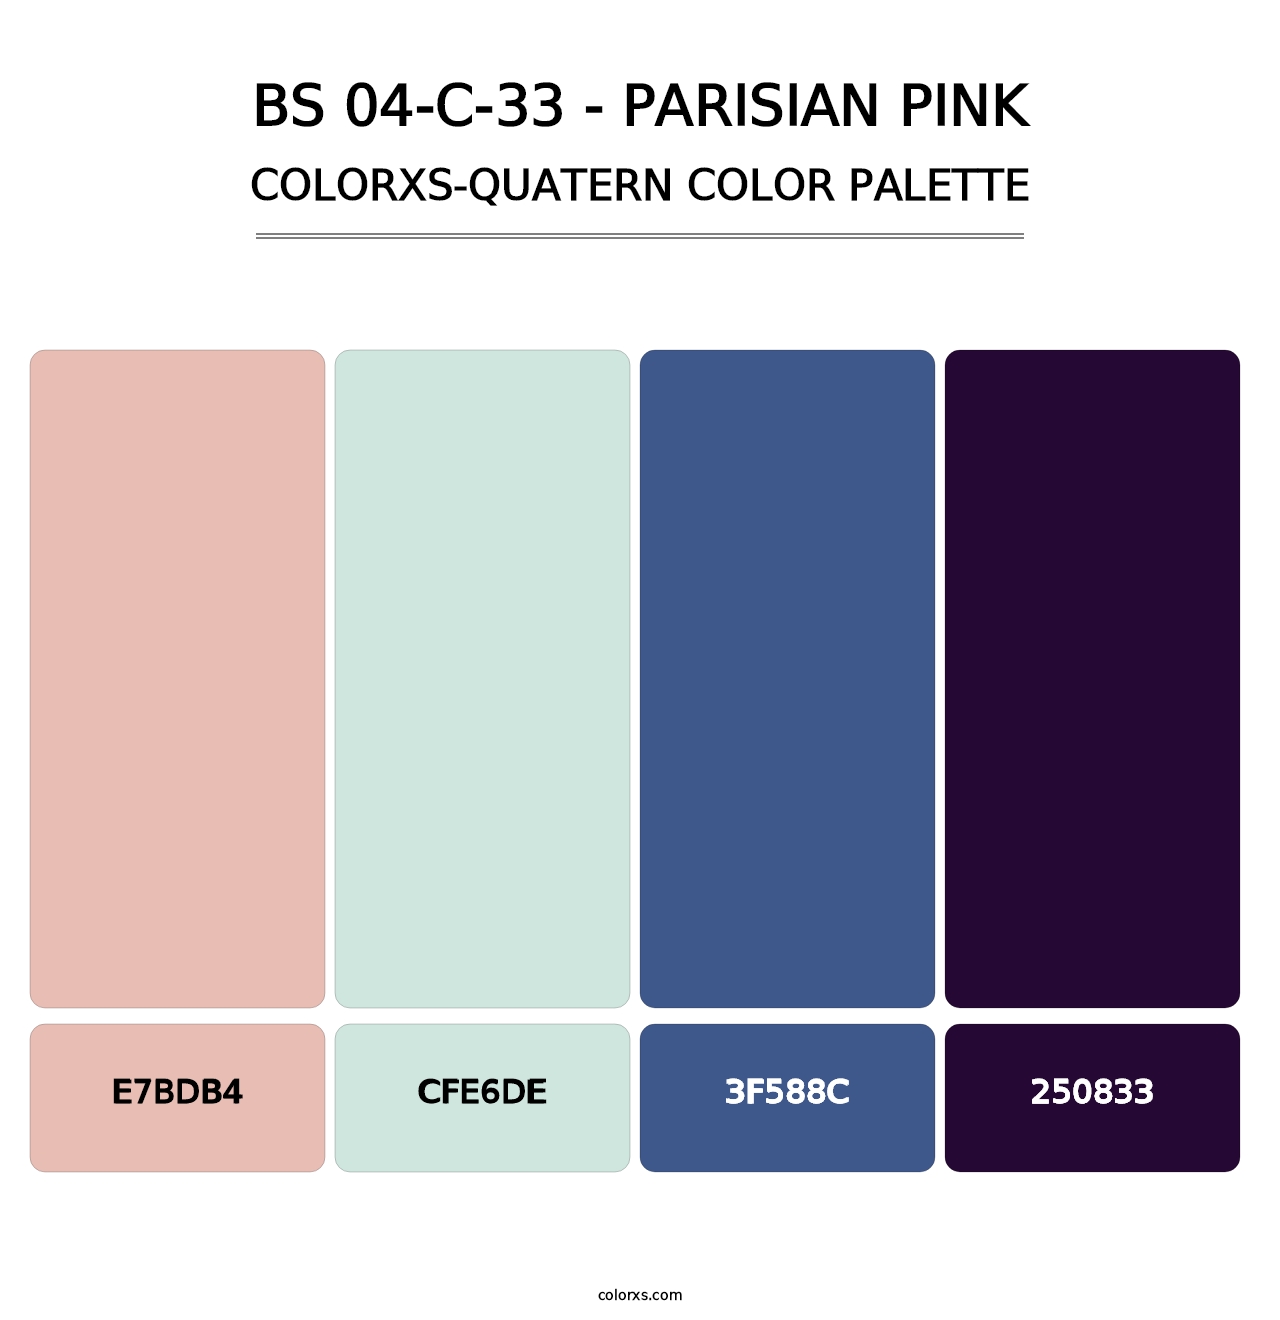 BS 04-C-33 - Parisian Pink - Colorxs Quatern Palette